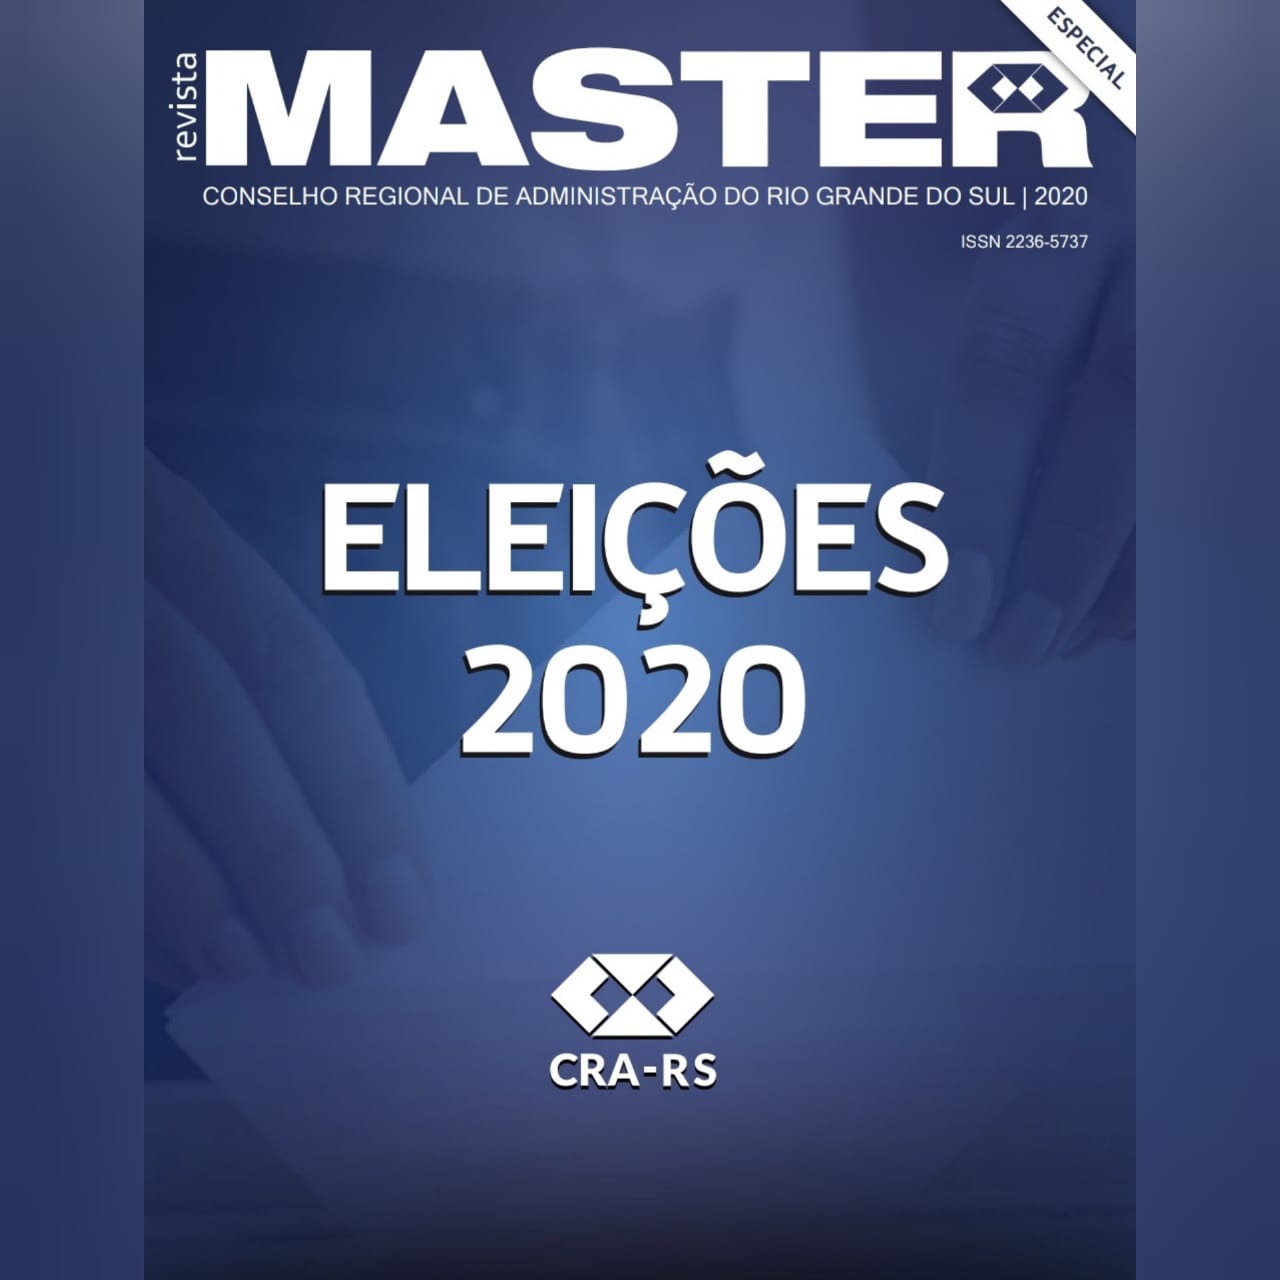 Já está no ar a revista Master especial sobre as Eleições 2020!